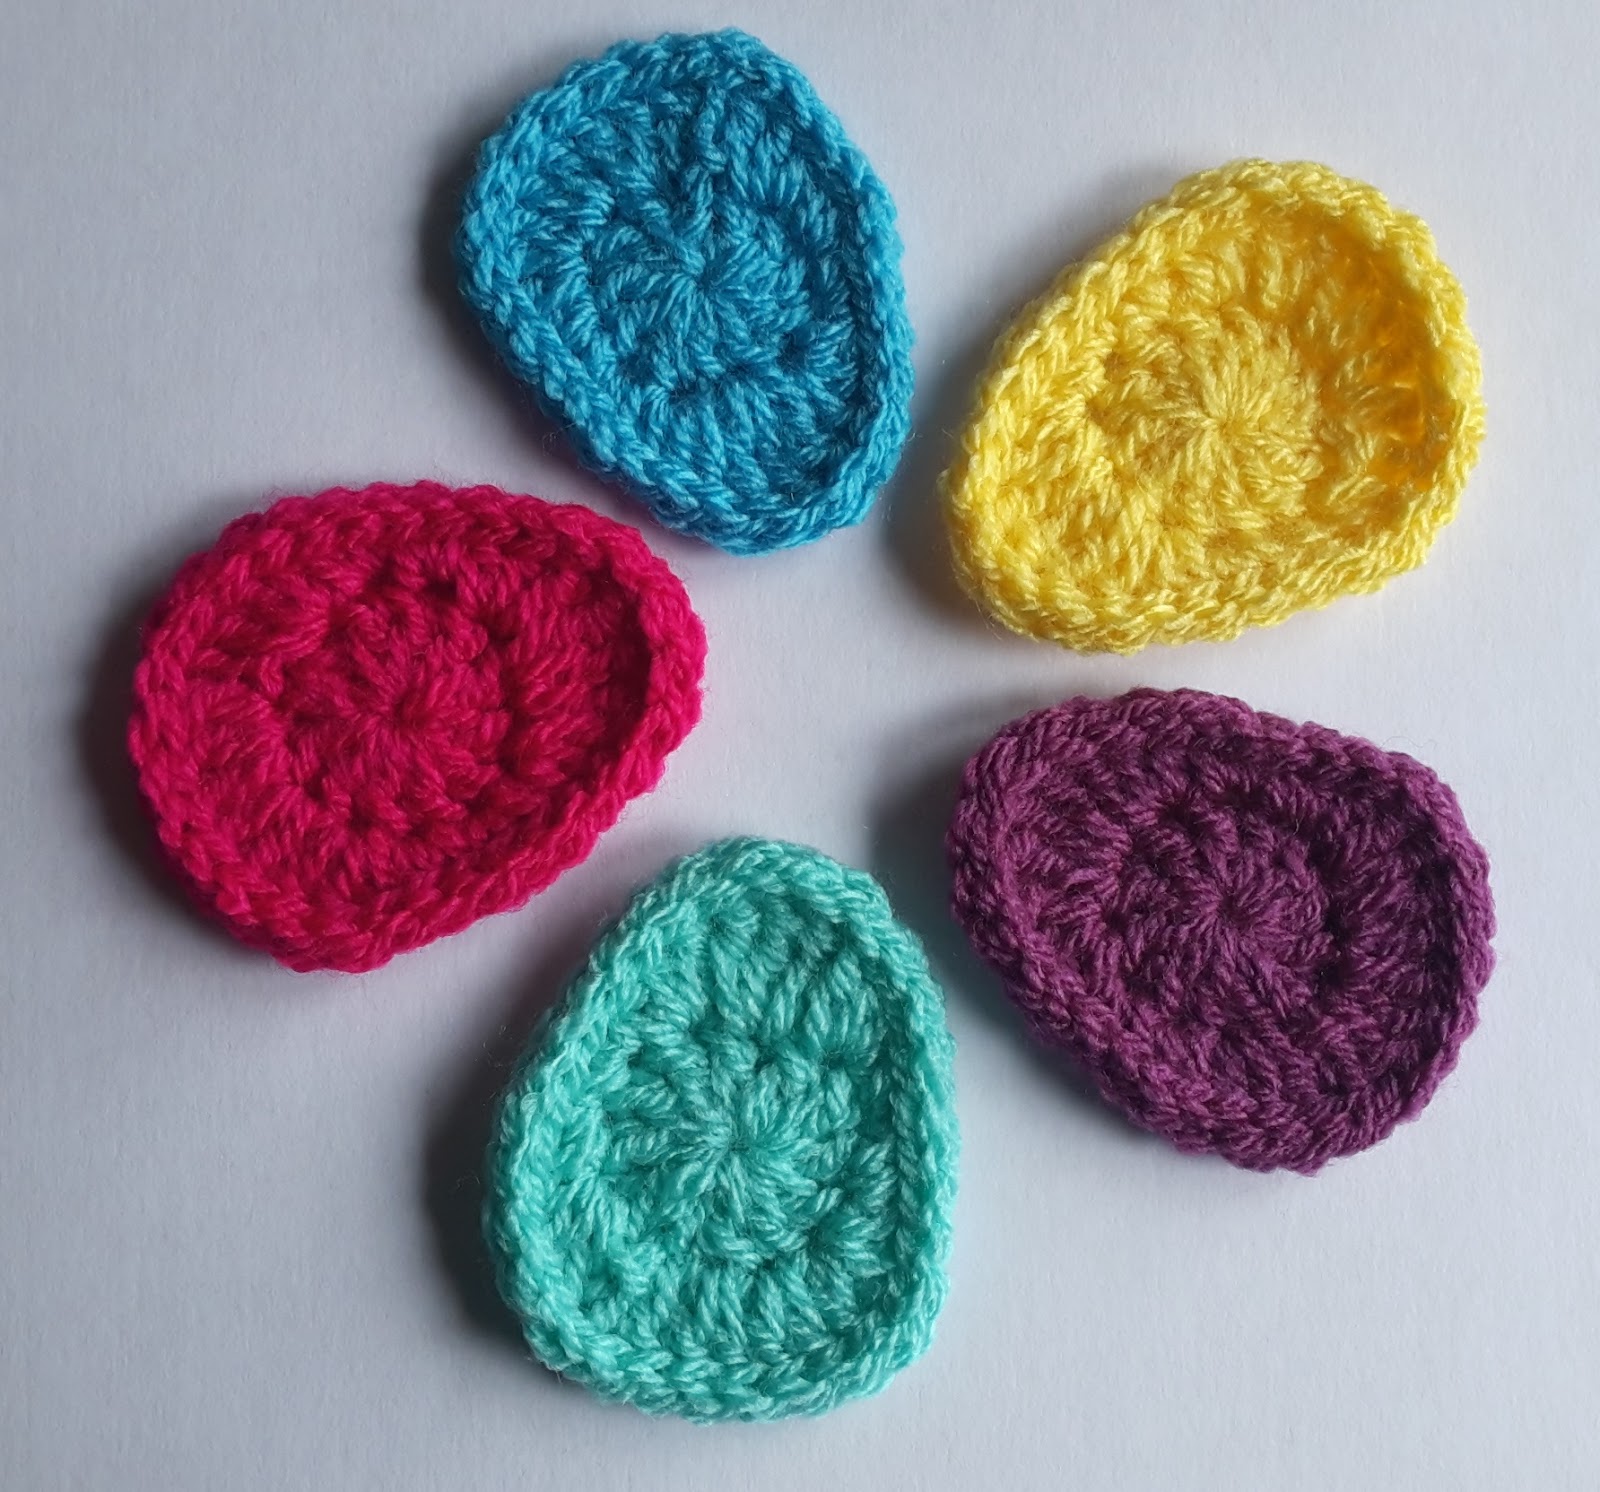 planet-yarn-little-easter-eggs-free-crochet-pattern